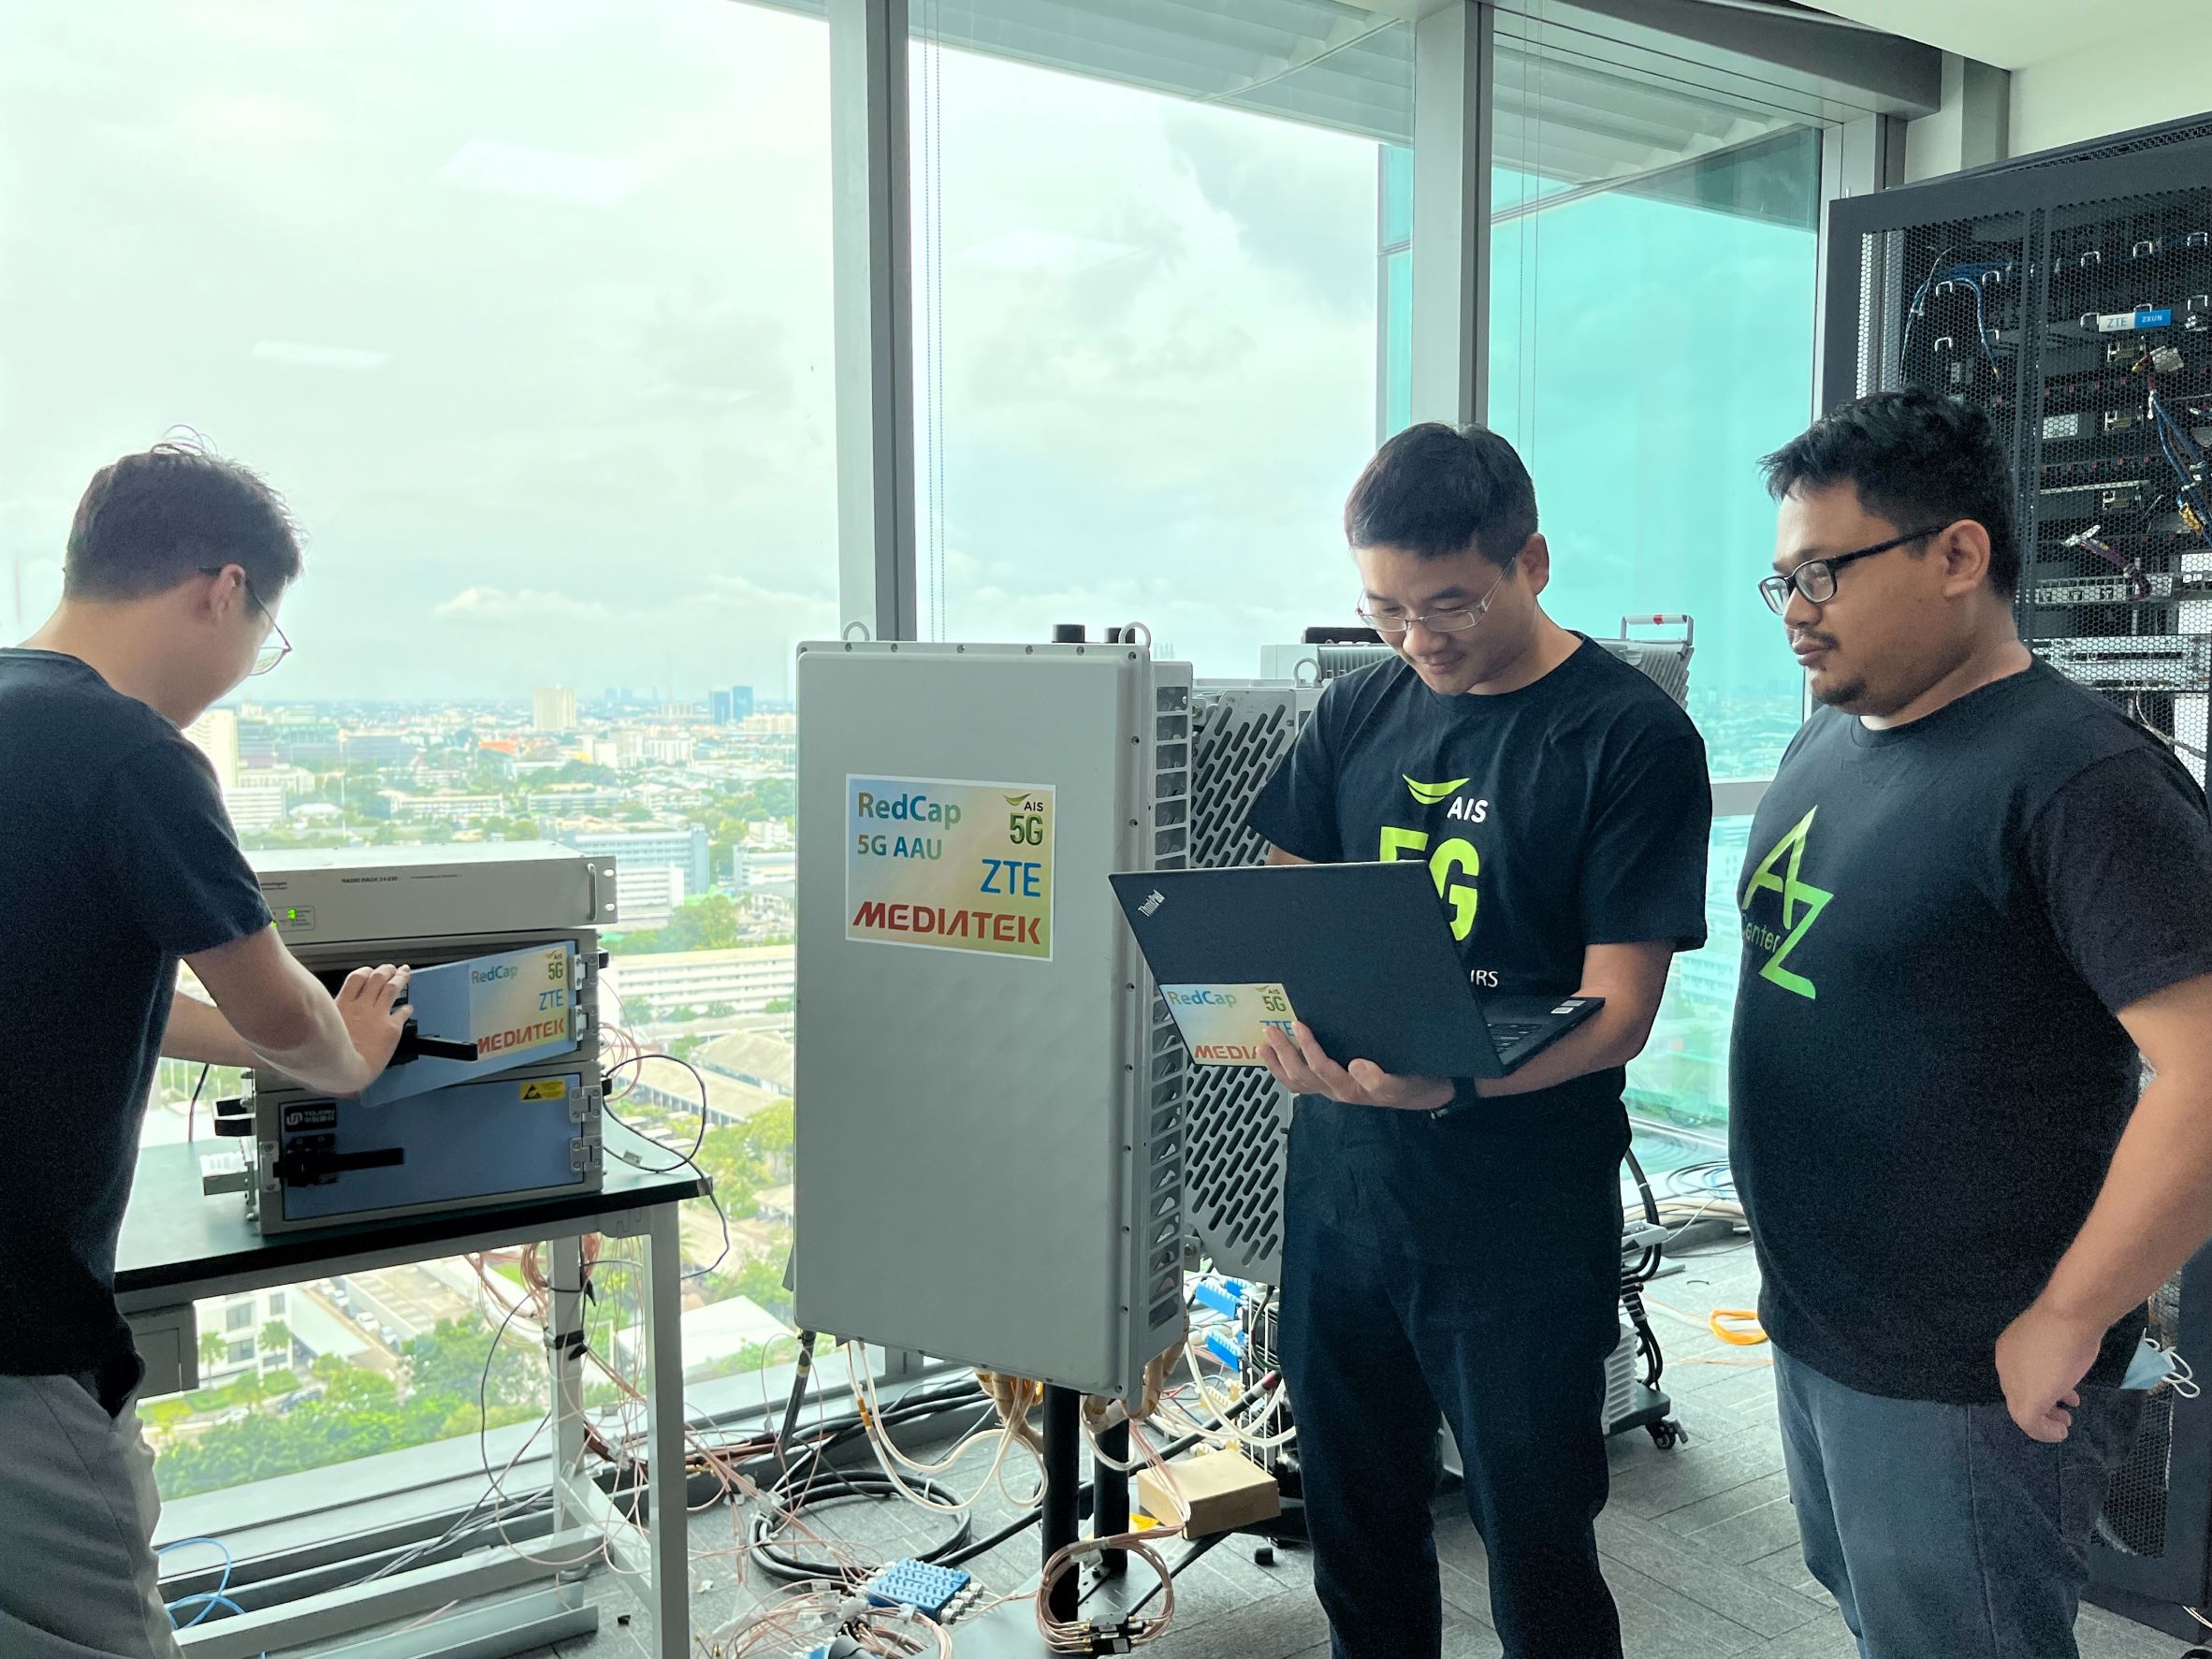 ดันวงการ IoT!! AIS - ZTE และ MediaTek ร่วมมือกันทดสอบเทคโนโลยีใหม่ 5G RedCap คลื่นความถี่ 2.6GHz สำเร็จเป็นครั้งแรกของเอเชียตะวันออกเฉียงใต้